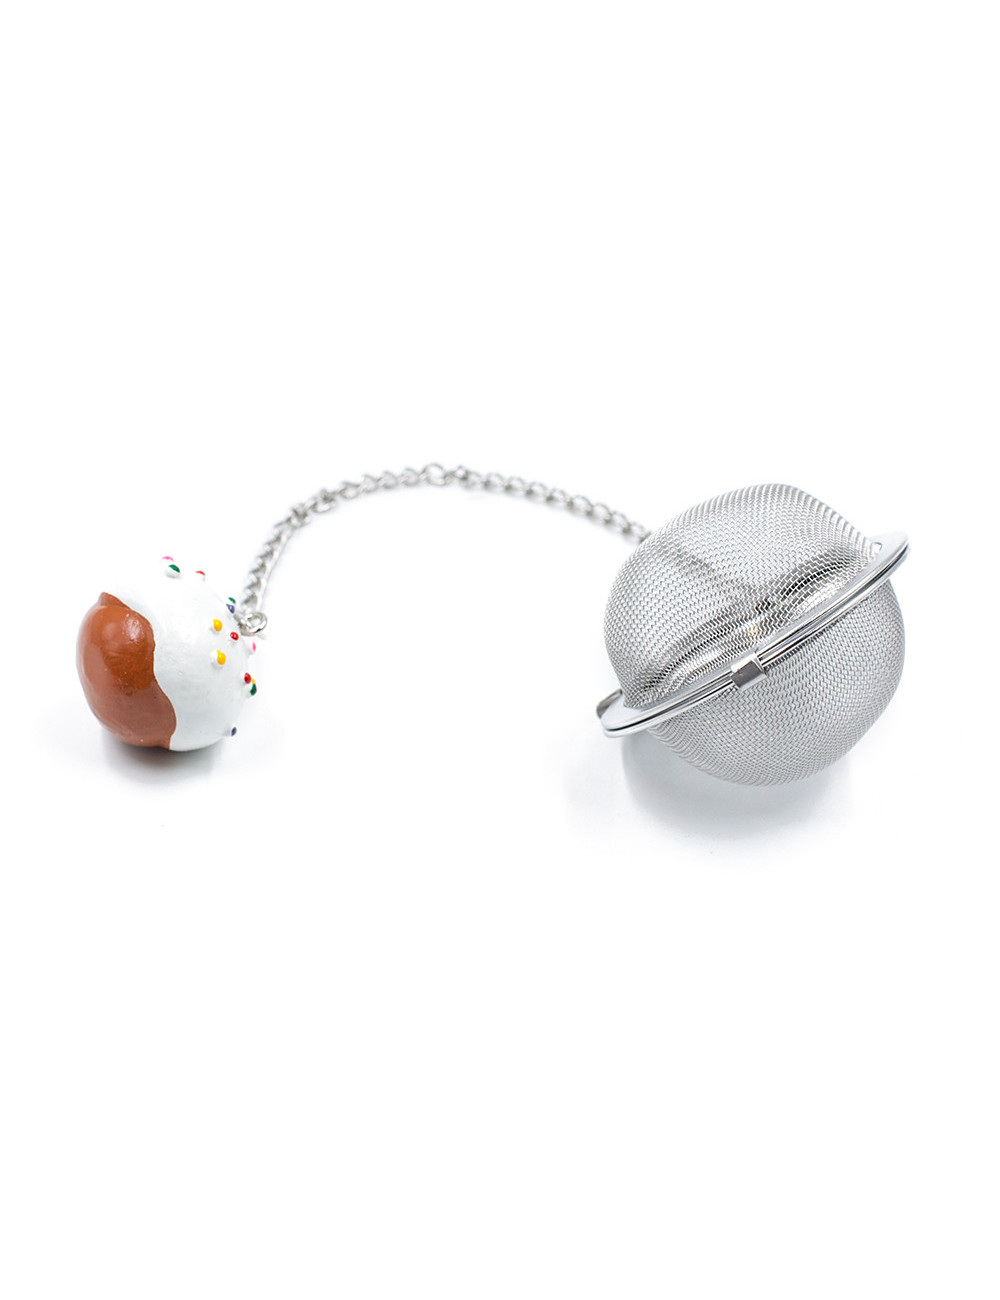 Filtro sfera Ø 5 cm in acciaio inox con ciondolo colorato - La Pianta del Tè vendita online